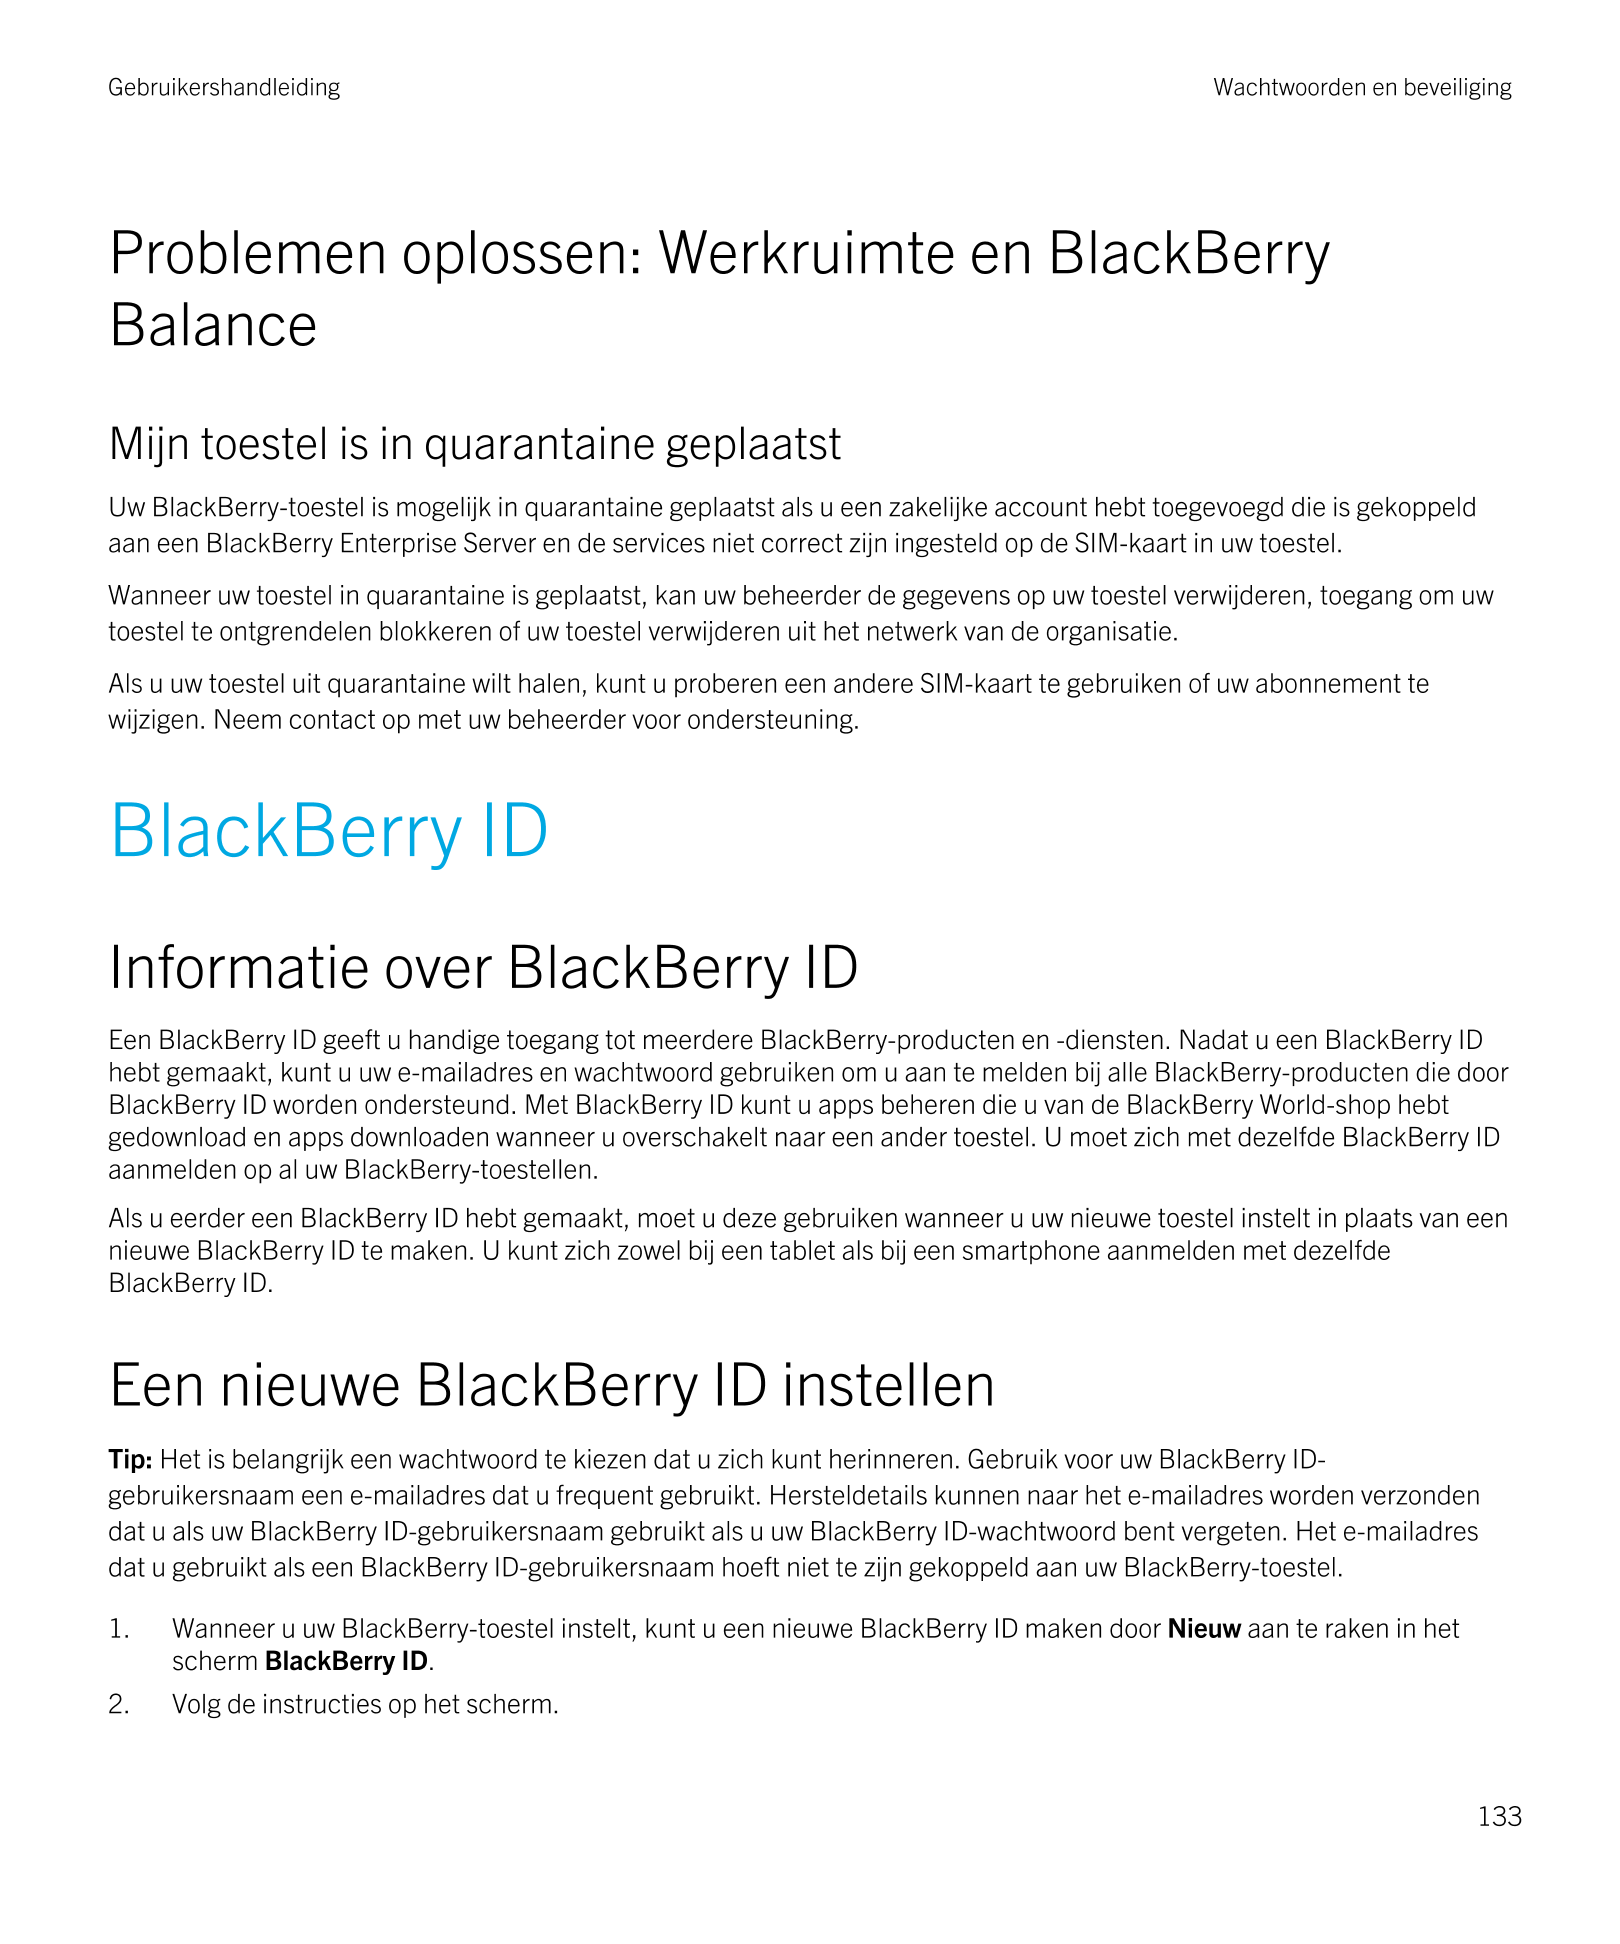 Gebruikershandleiding Wachtwoorden en beveiliging
Problemen oplossen: Werkruimte en  BlackBerry 
Balance
Mijn toestel is in quar